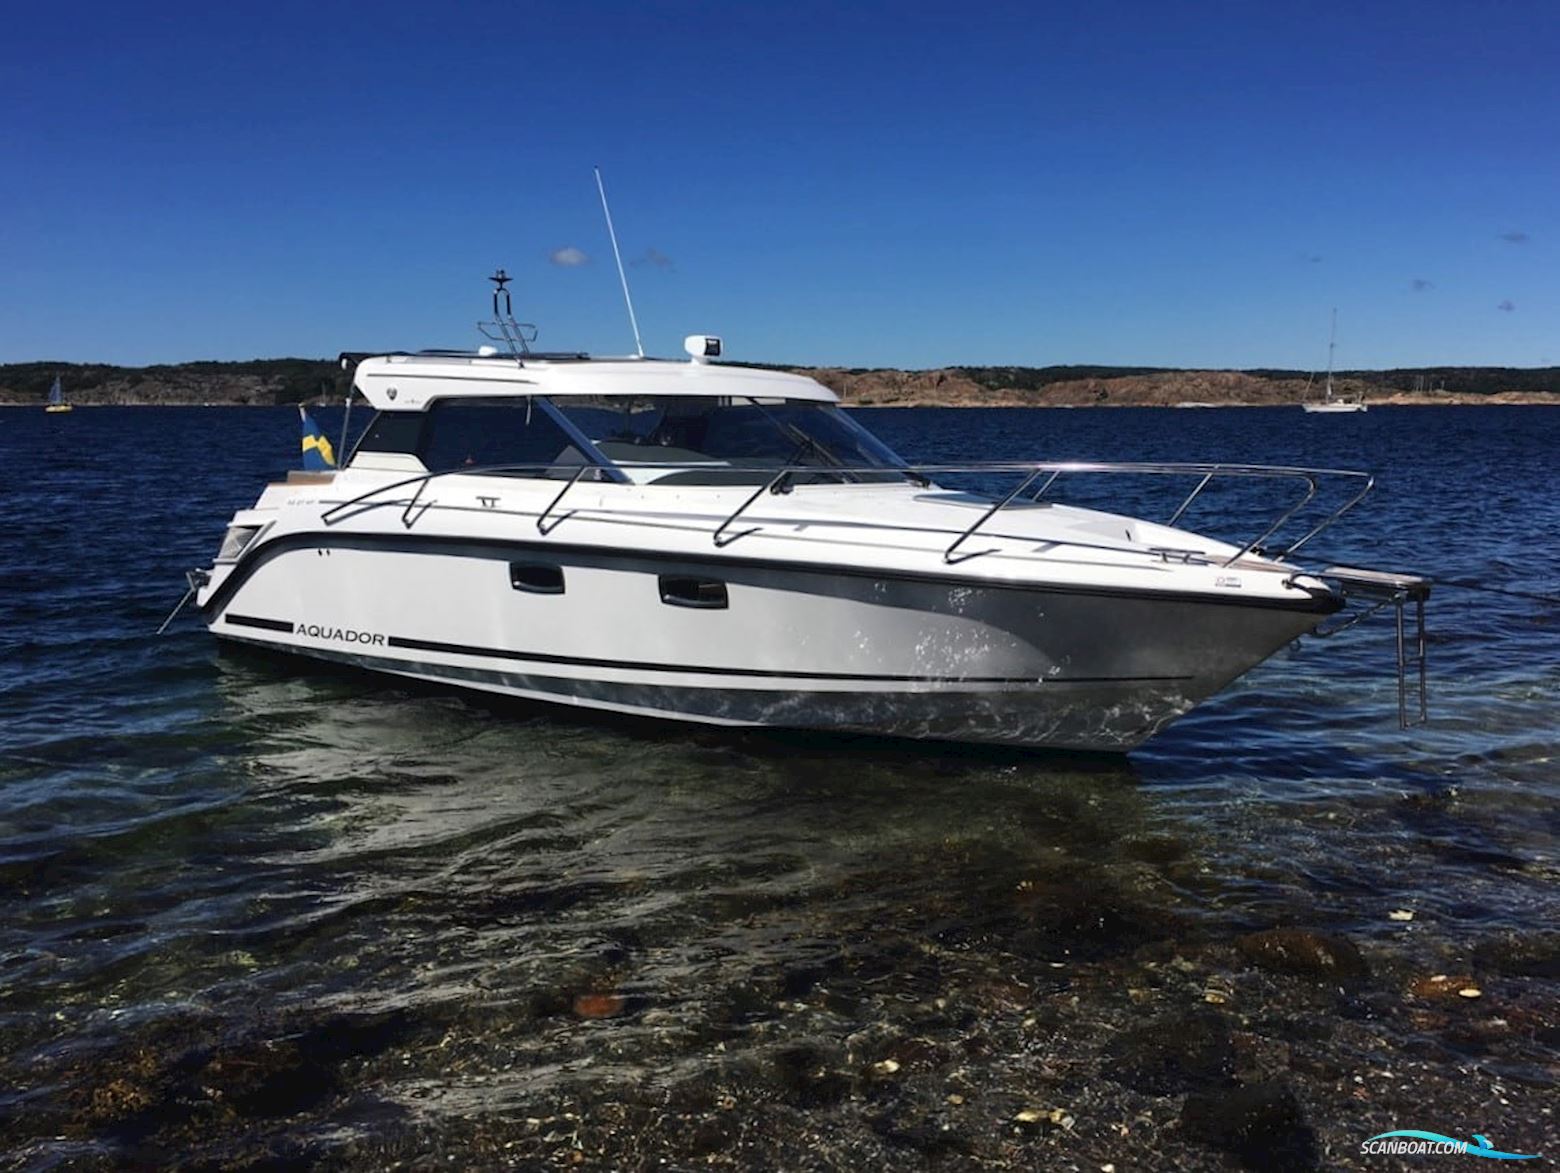 Aquador 27 HT Motorbåt 2018, med Mercury Diesel V6-260 hk motor, Sverige